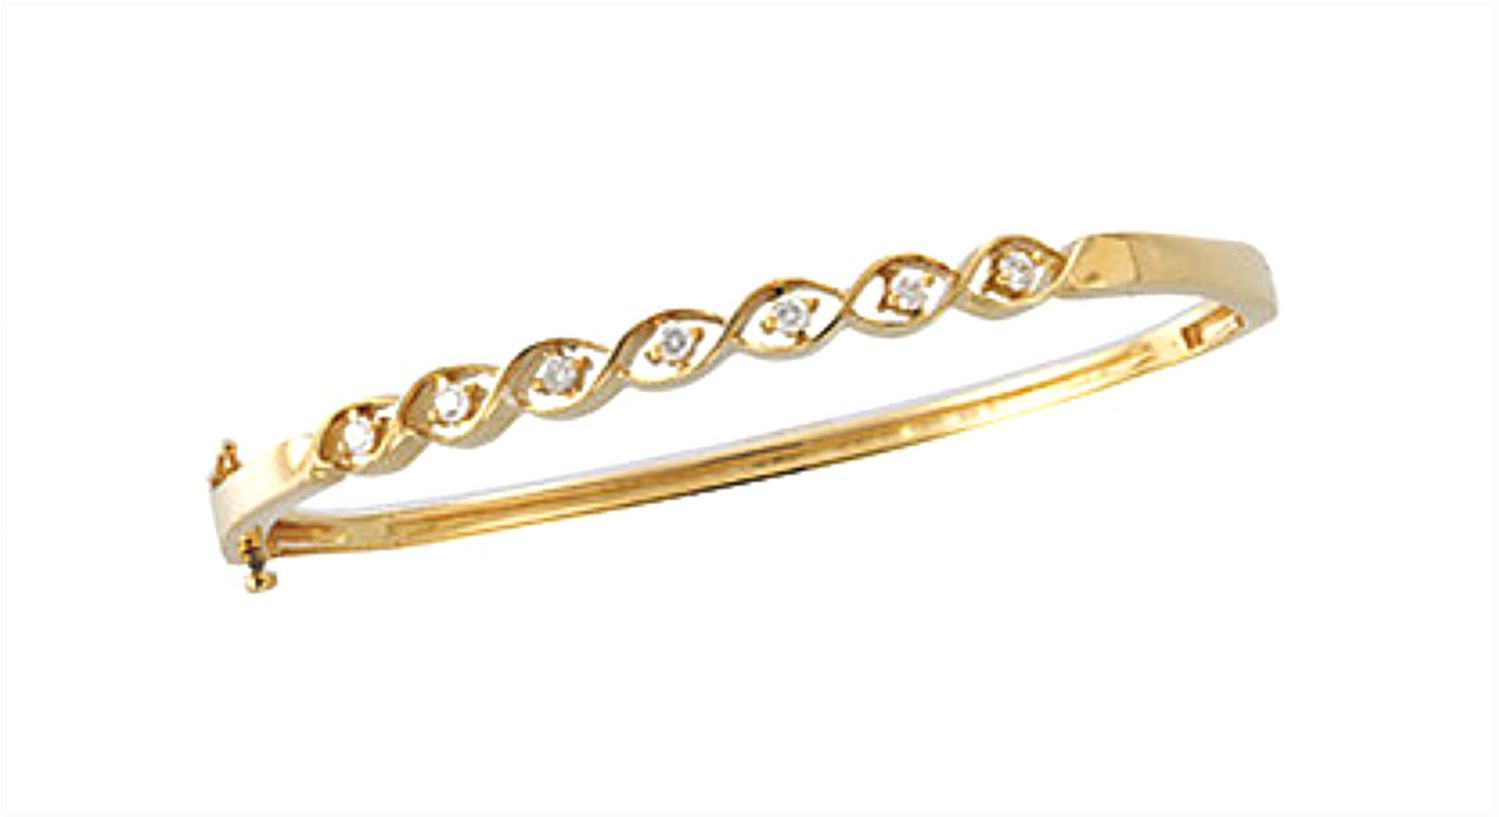 Fancy 1/4 CTW Diamond Bangle Bracelet in 14k Yellow Gold, 7"